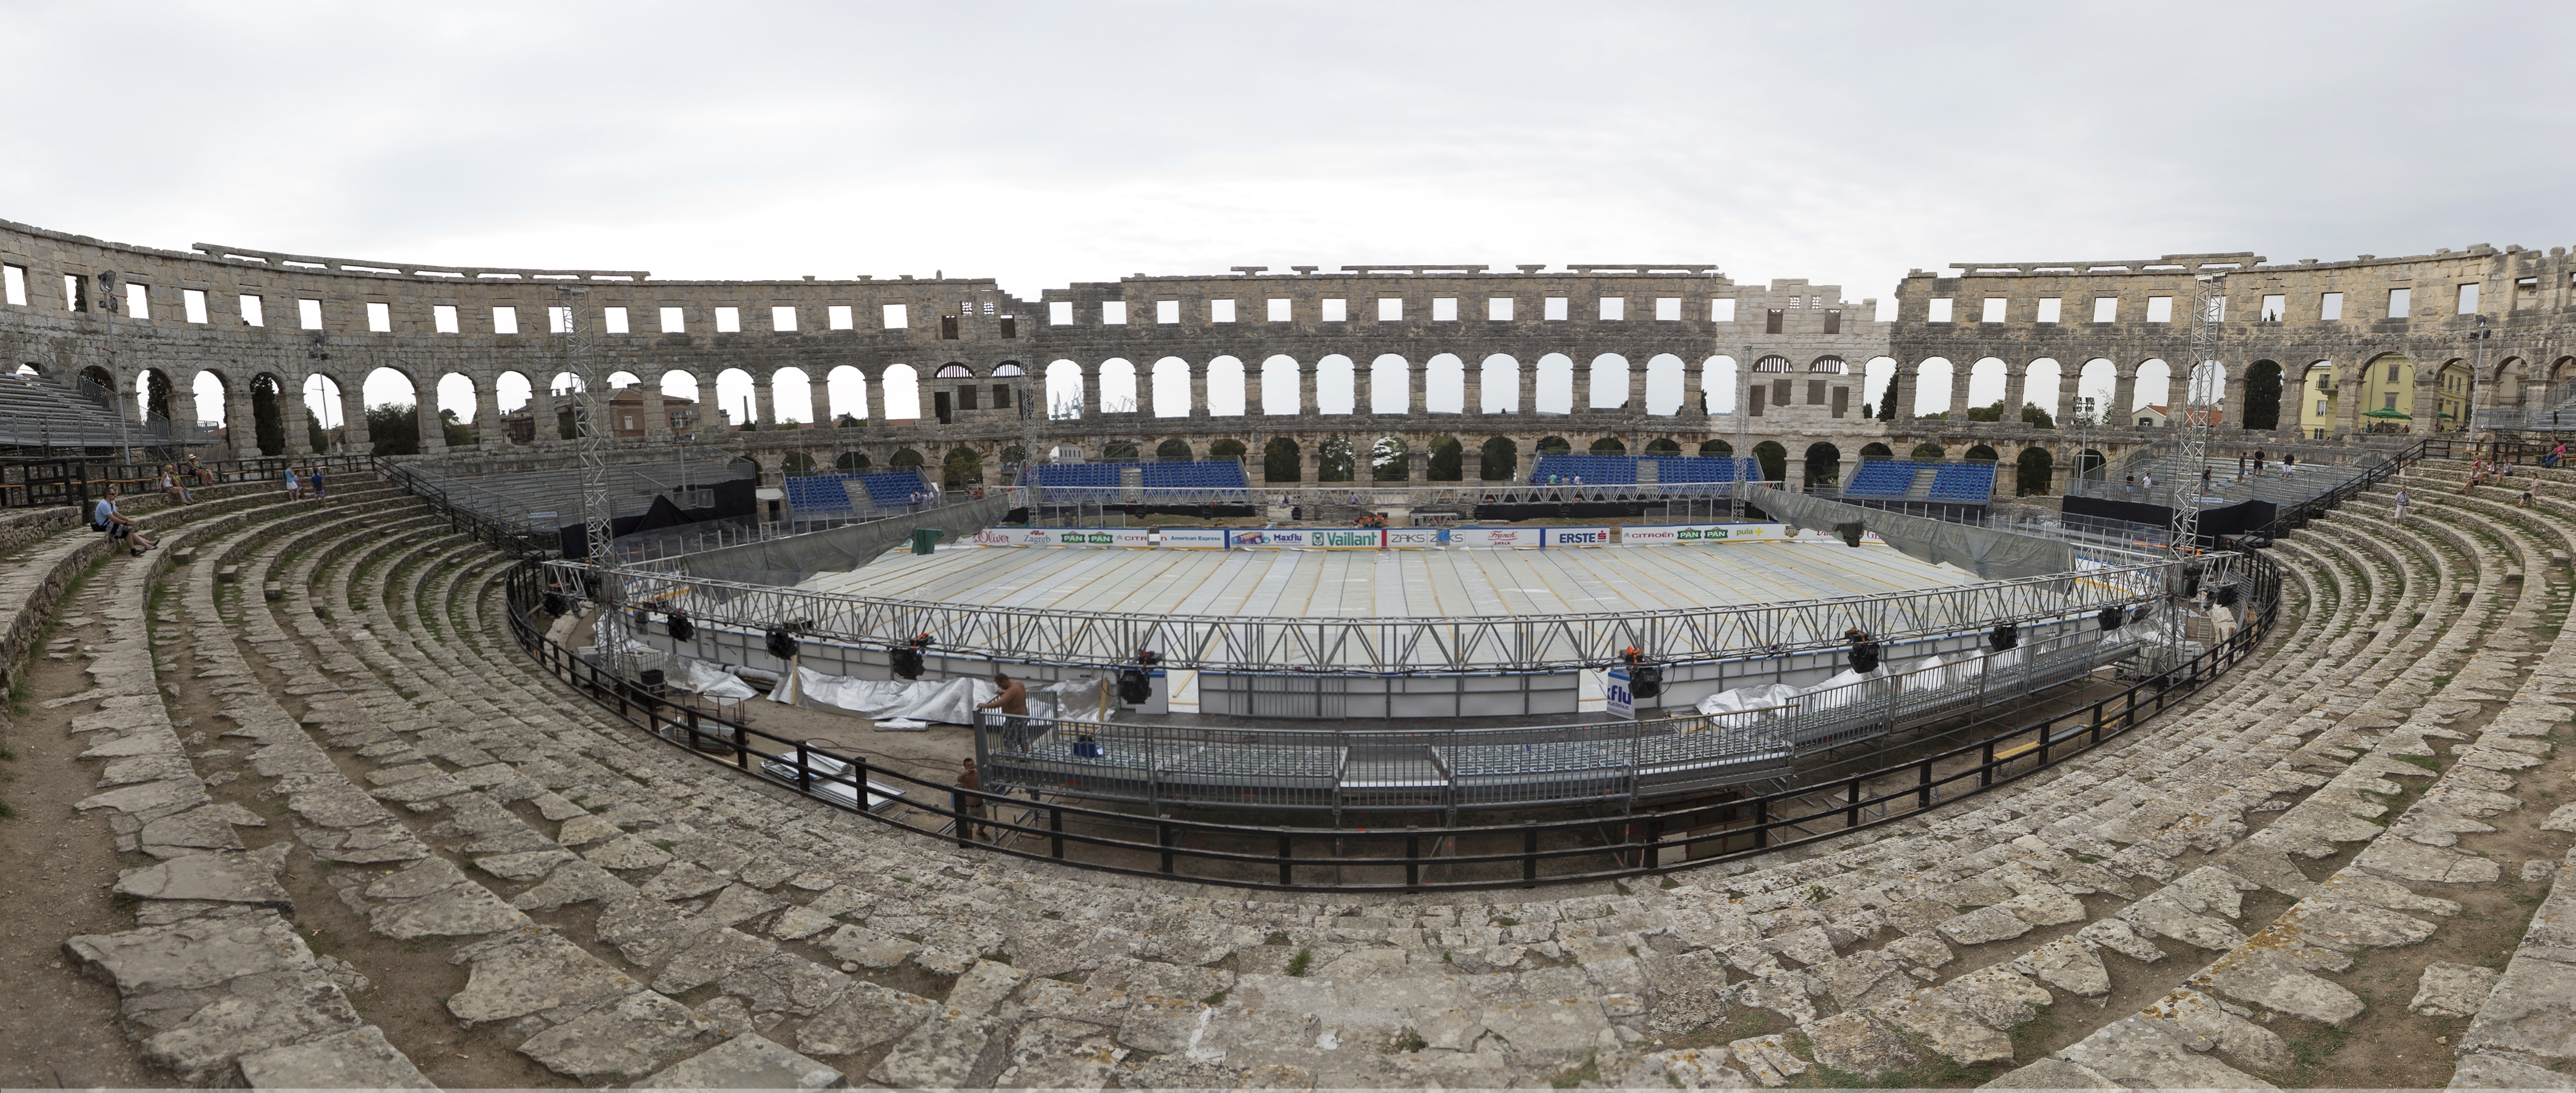 ancient roman amphitheatre